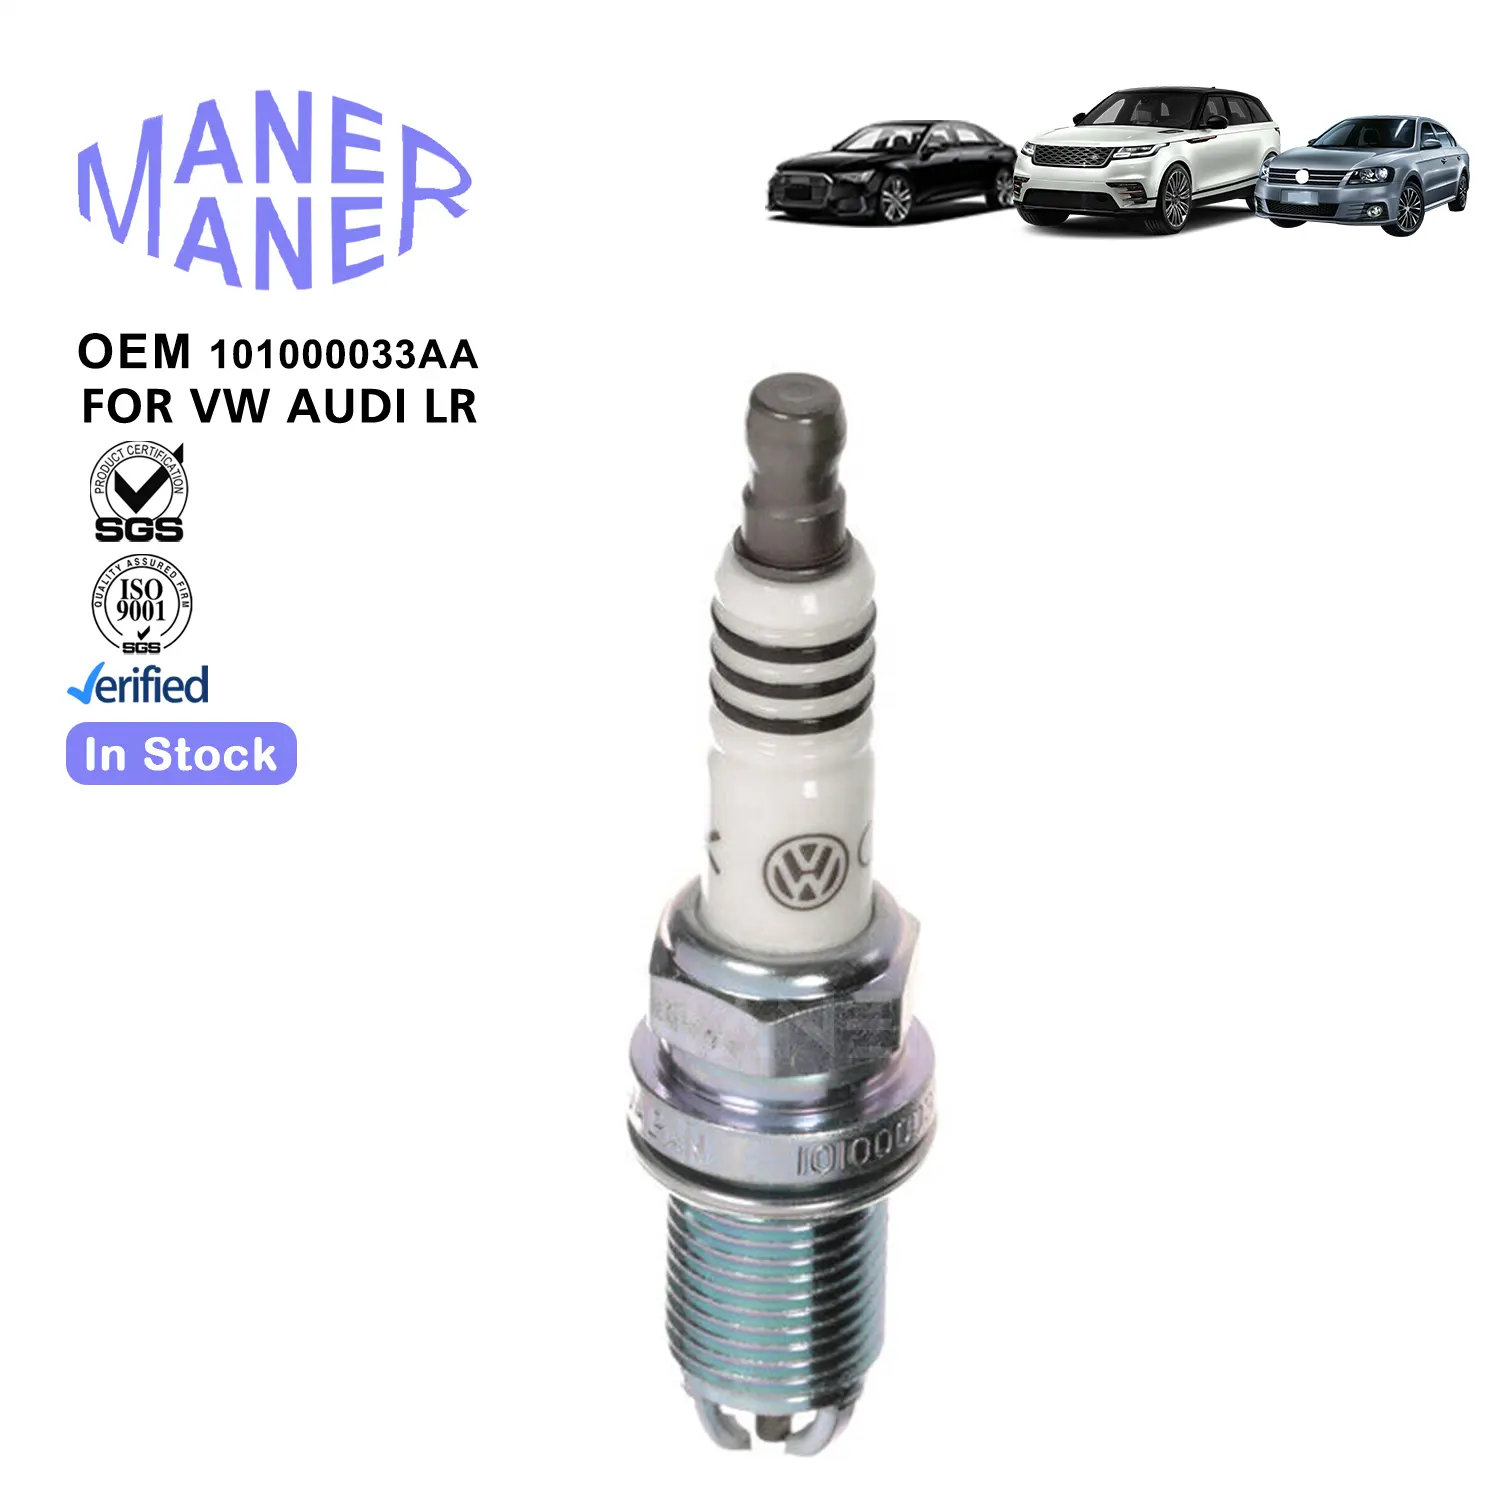 Maner tự động hệ thống động cơ 101000033aa 101000065aa sản xuất cũng được thực hiện bugi cho Audi VW Bọ Cánh Cứng Golf Jetta A4 B5 A6 2.8L